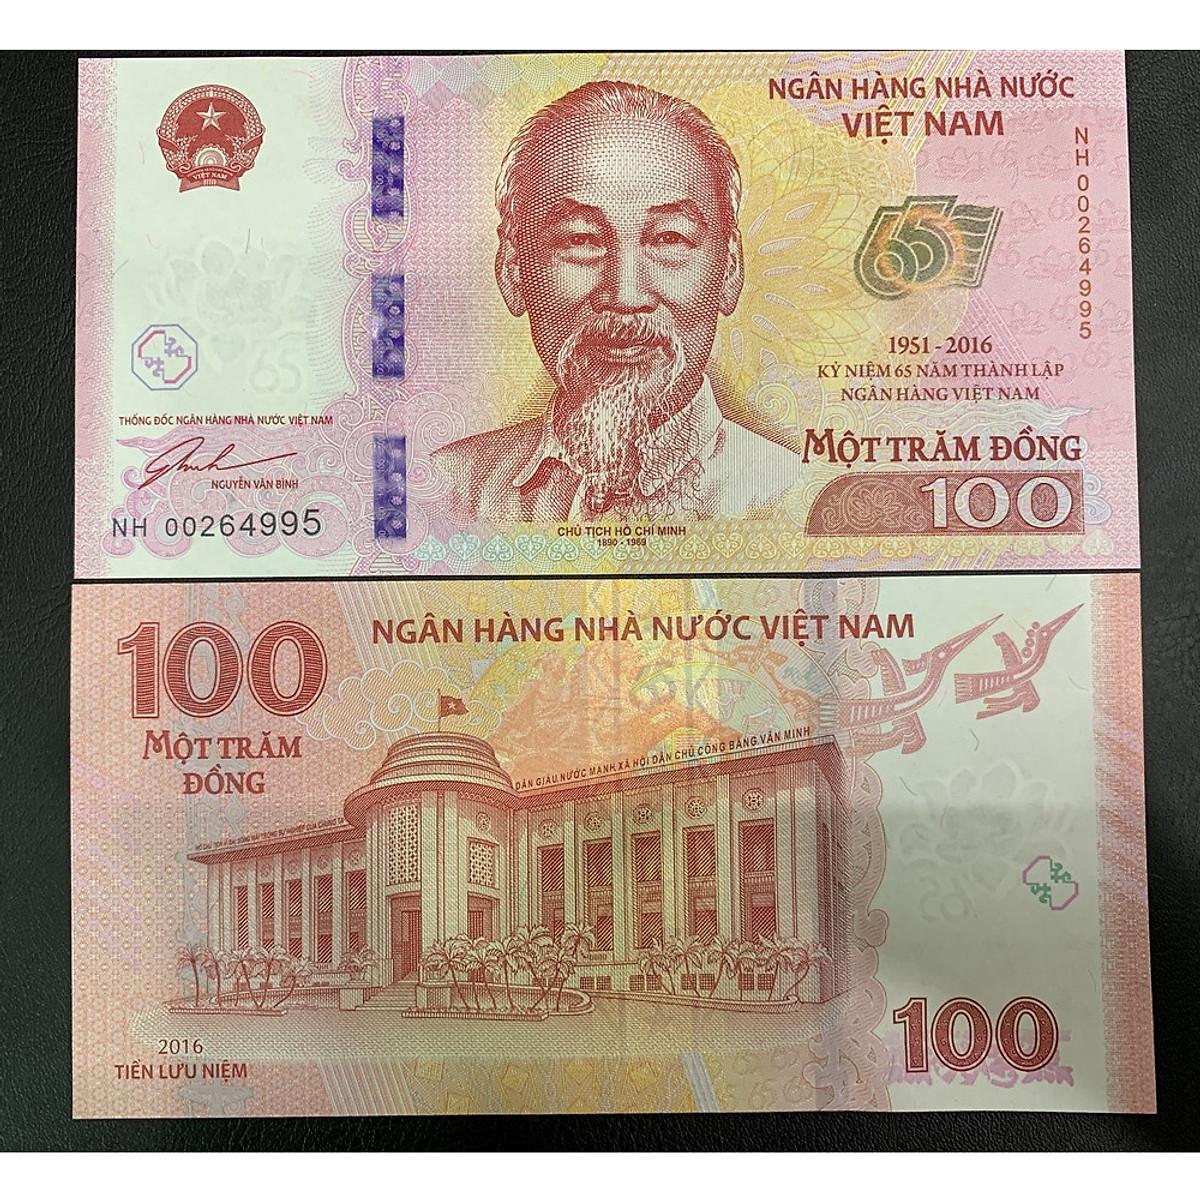 Tiền 100 đồng kỷ niệm 65 năm thành lập ngân hàng nhà nước Việt Nam năm 2016, mới 100% - PASA House